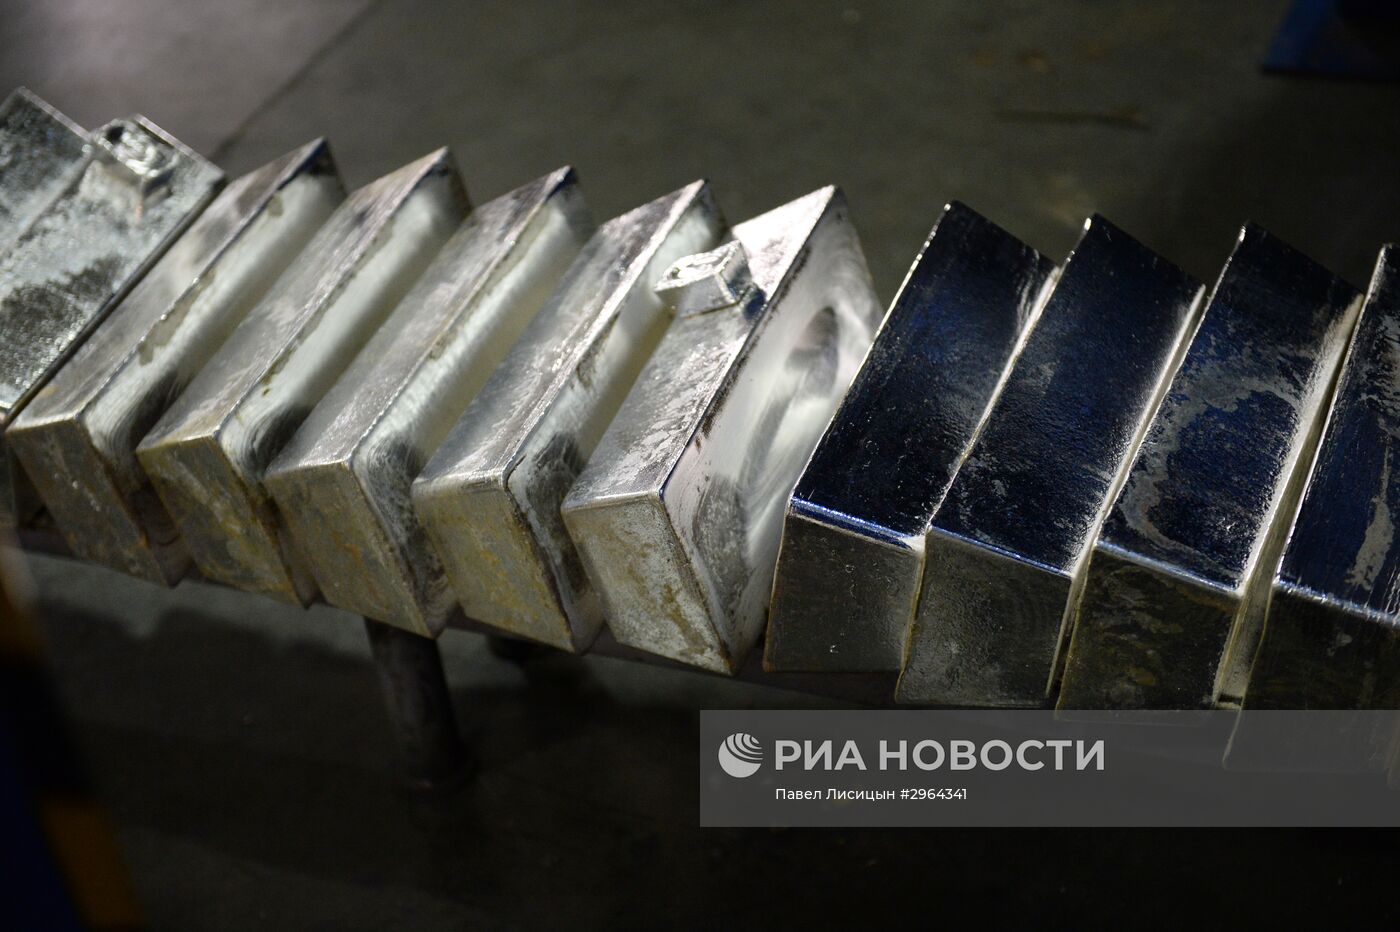 Екатеринбургский завод по обработке цветных металлов